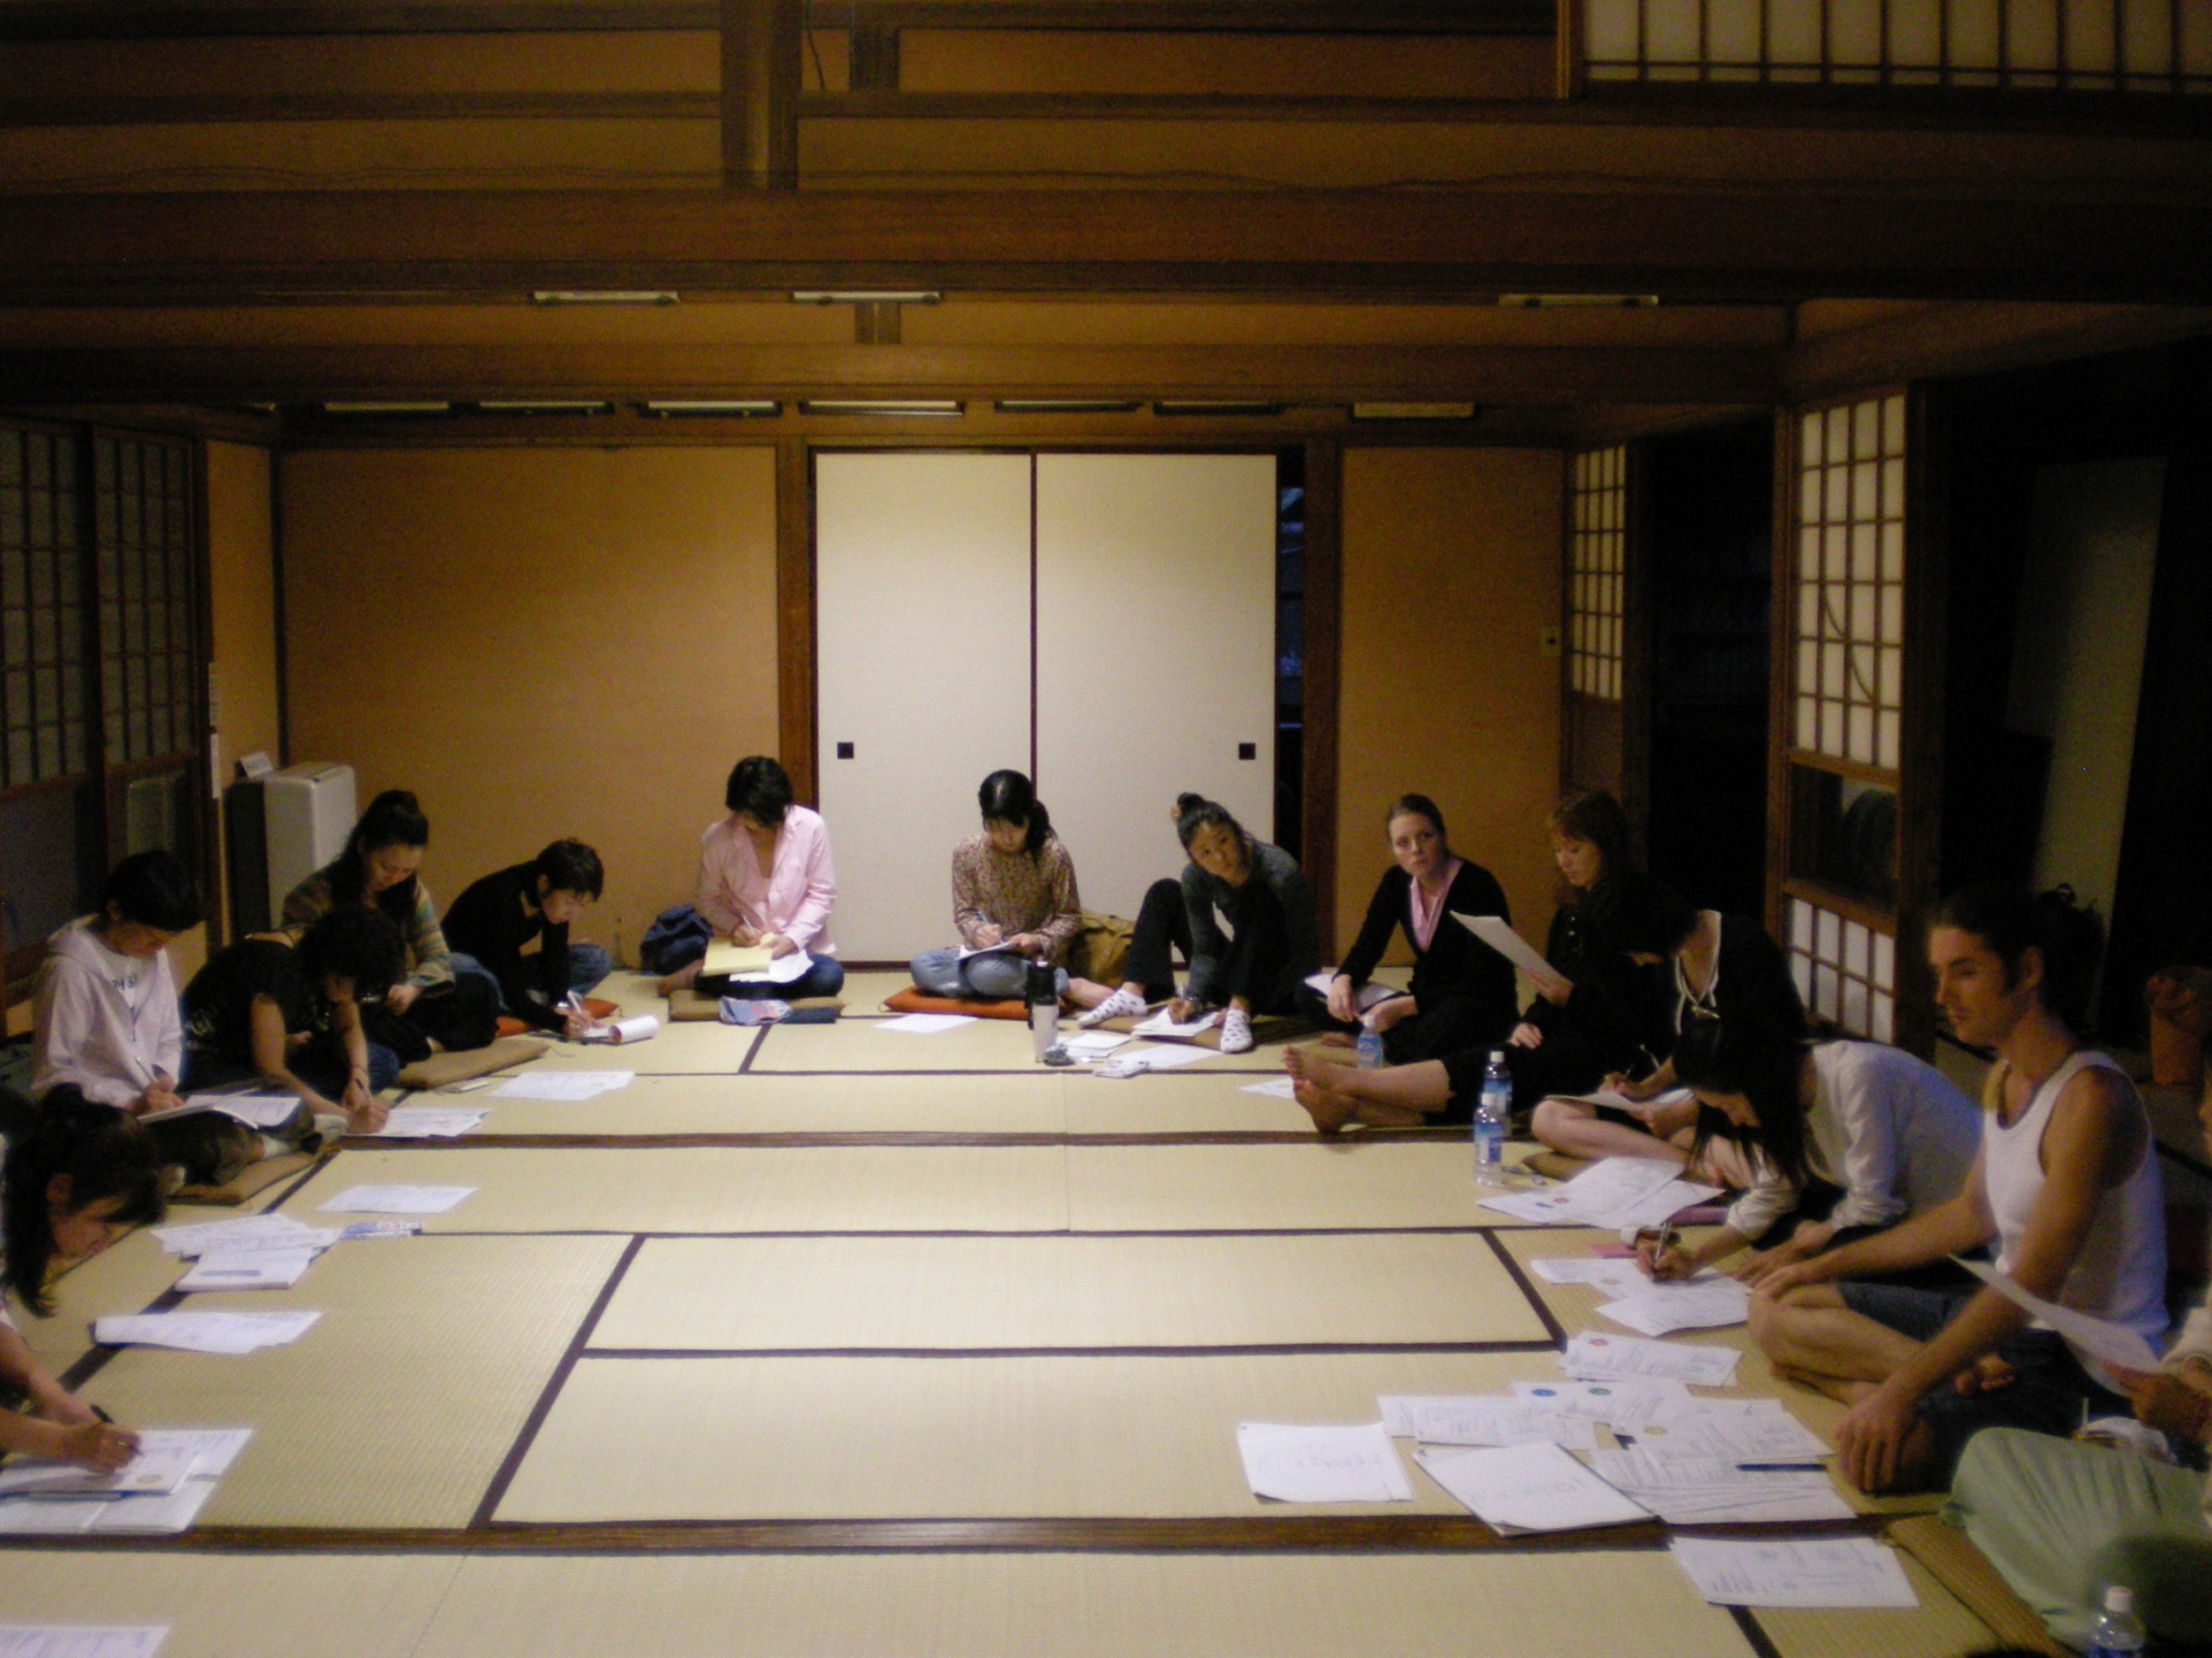 Workshop on the chakras, Kamakura, Japan